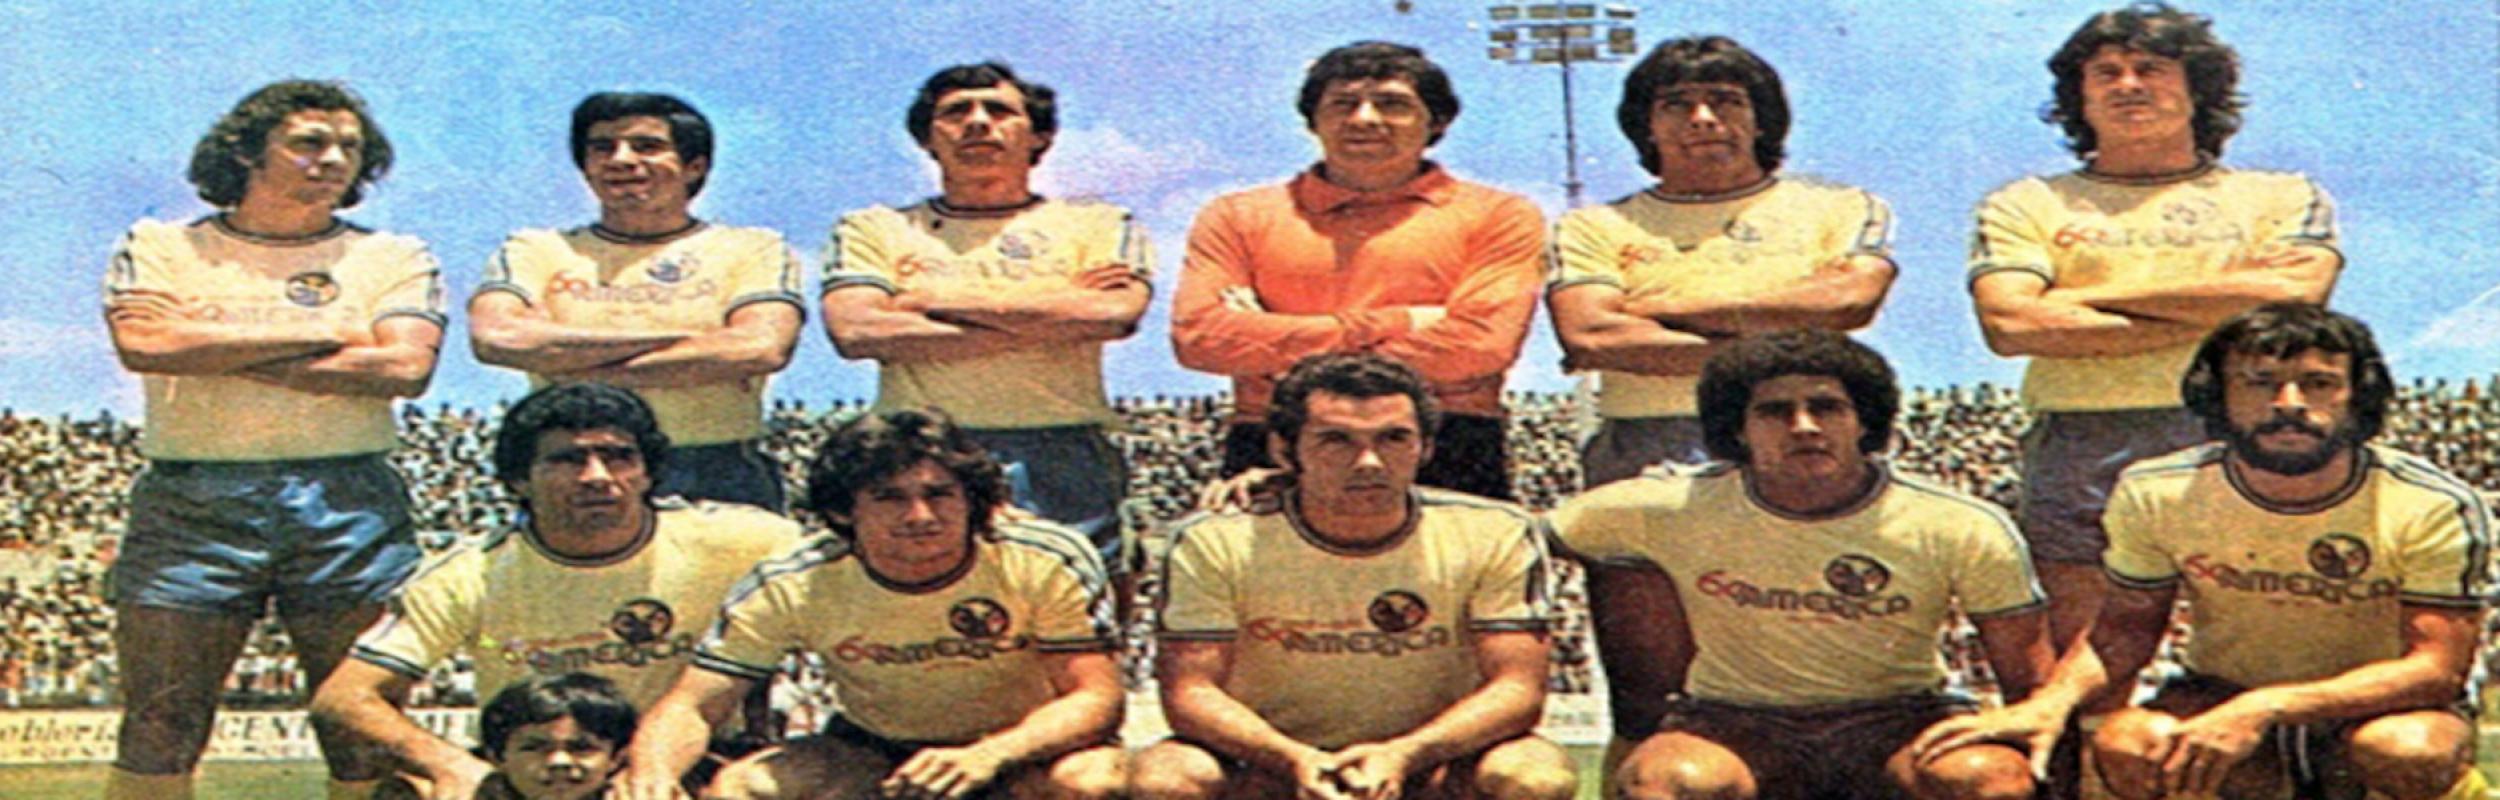 Copa Interamericana 1977